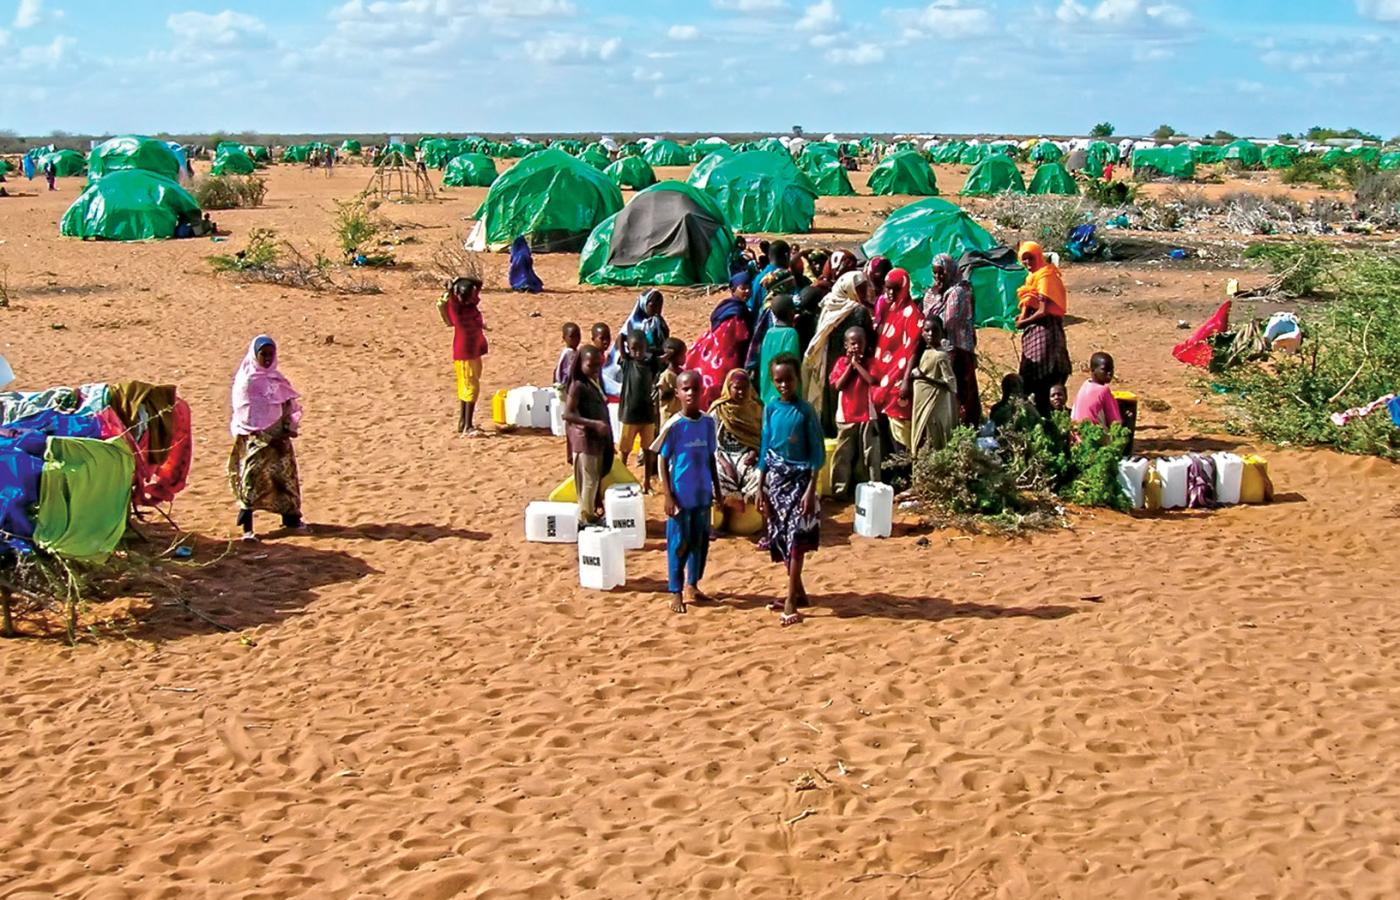 Obóz Dadaab w Kenii istnieje już 25 lat.